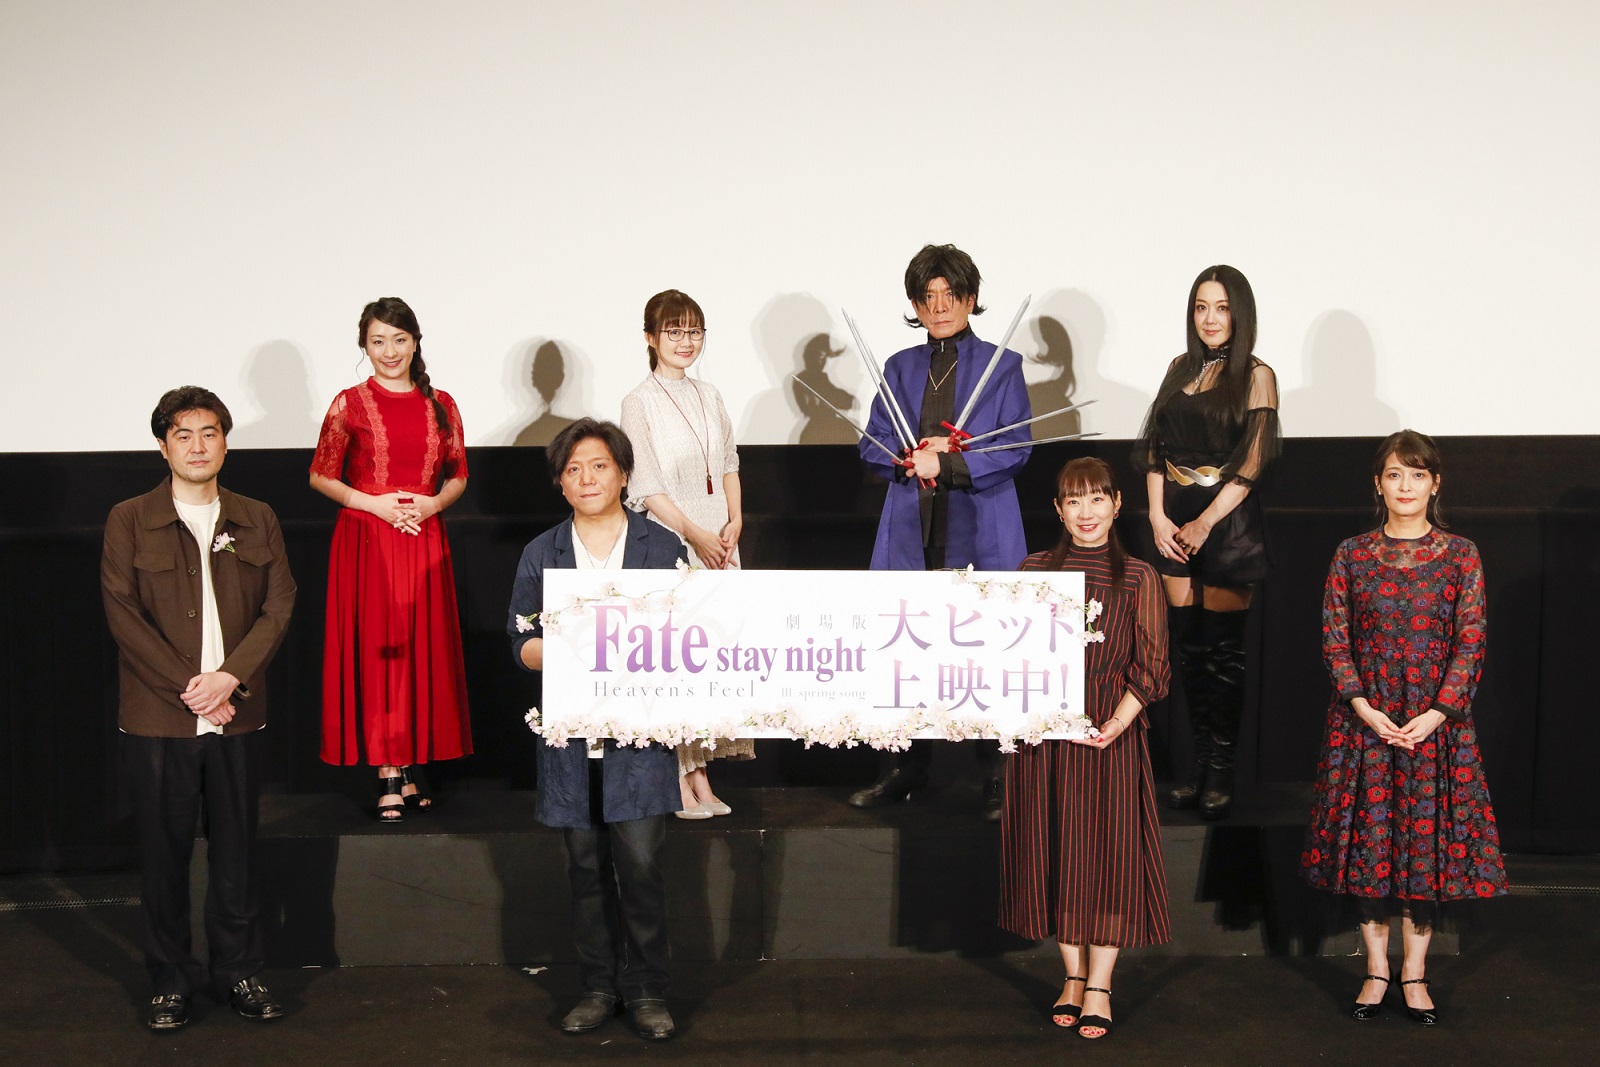 劇場版「Fate/stay night [Heaven's Feel]」Ⅲ.spring song 初日舞台